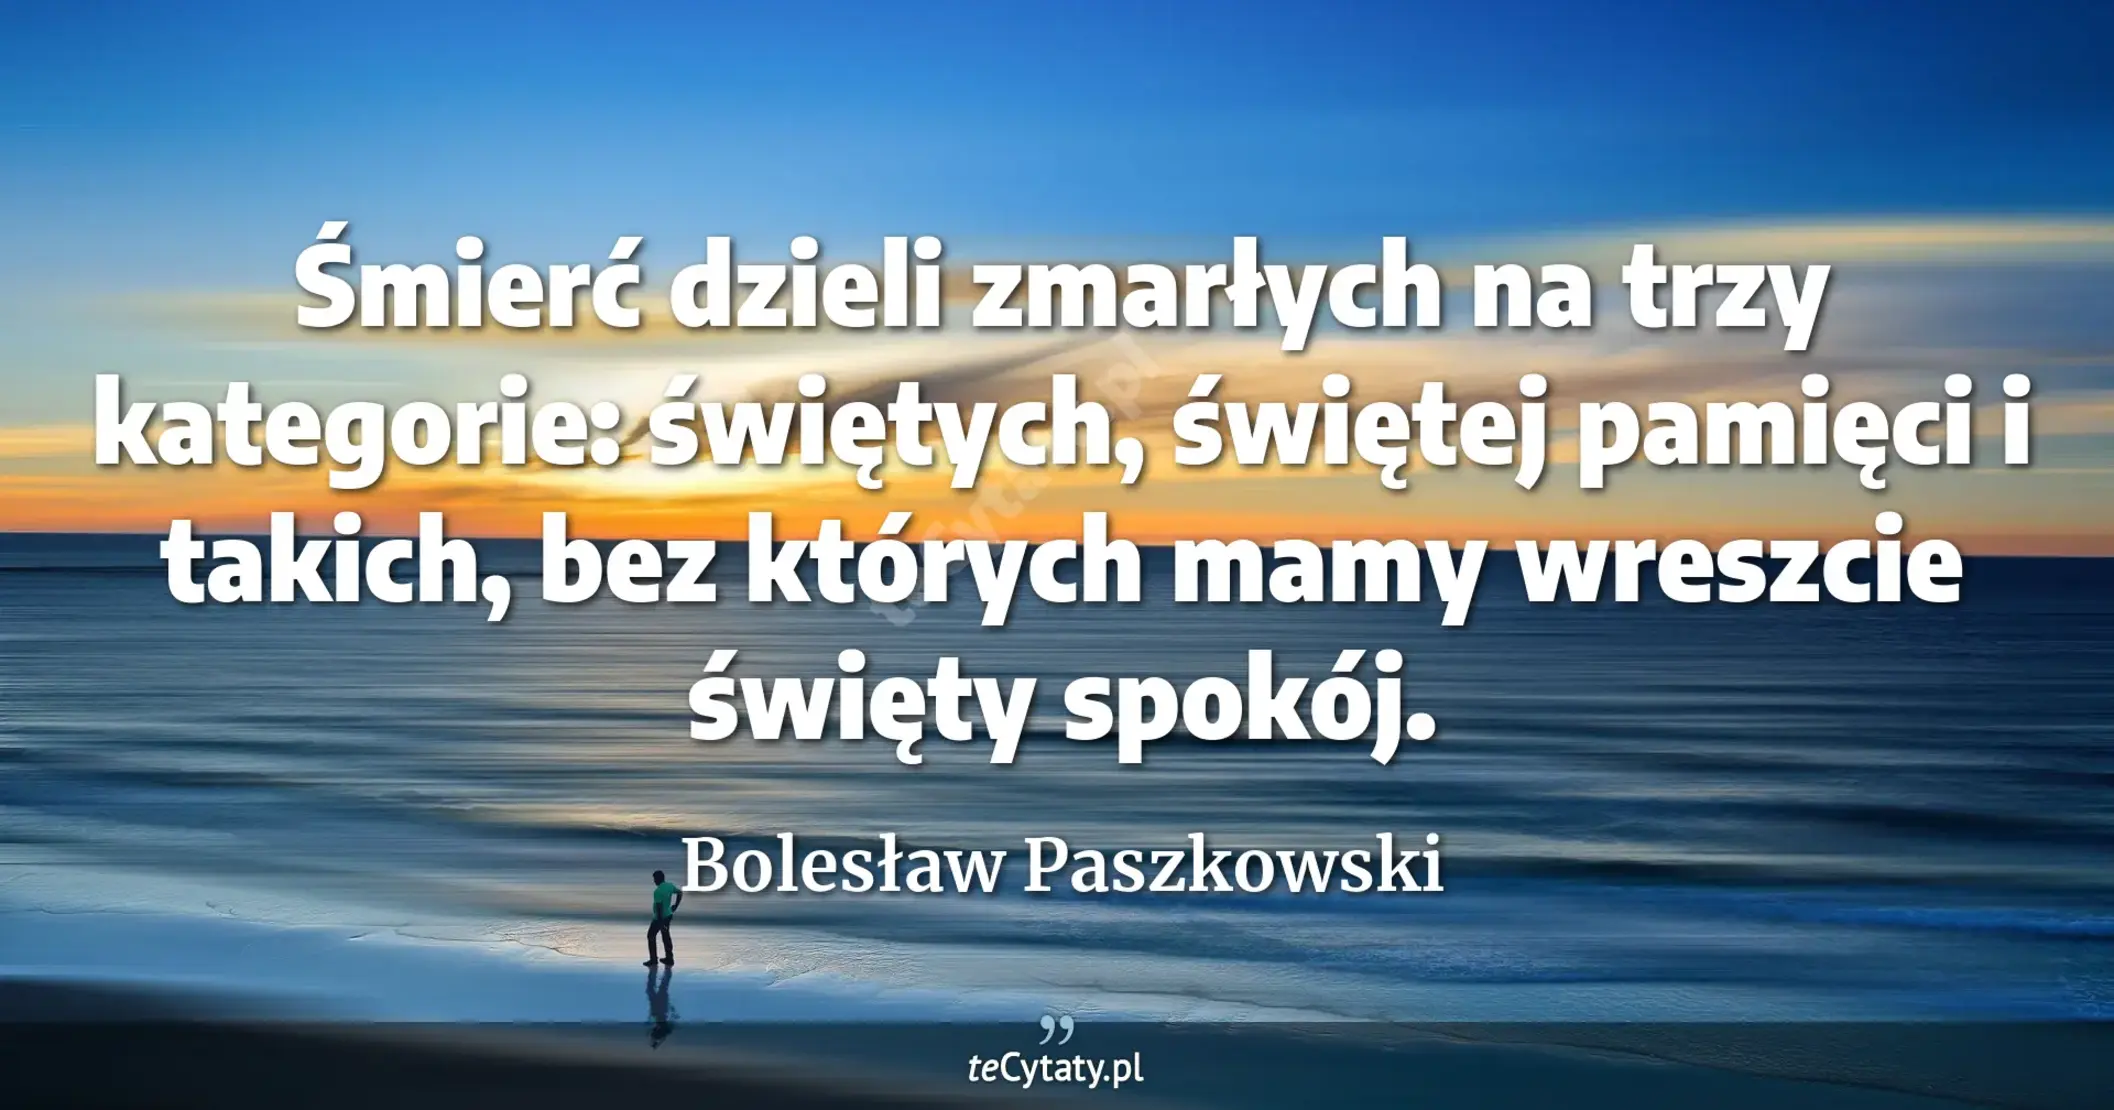 Śmierć dzieli zmarłych na trzy kategorie: świętych, świętej pamięci i takich, bez których mamy wreszcie święty spokój. - Bolesław Paszkowski